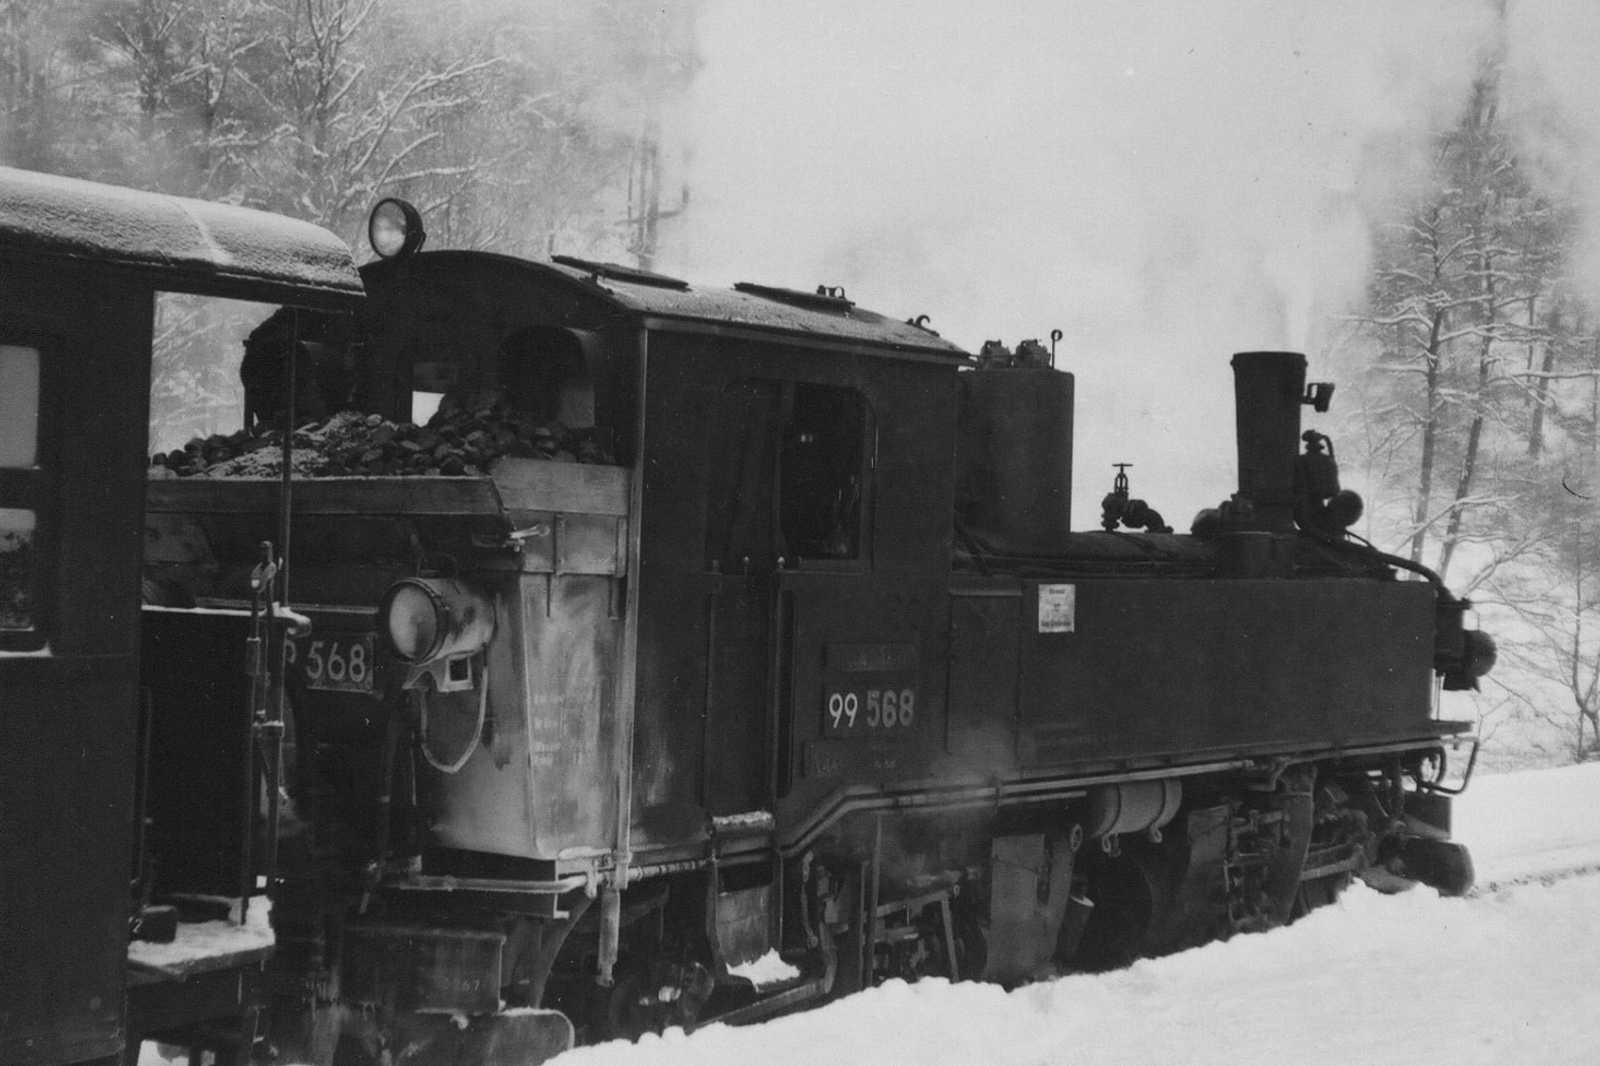 21.12.1969. Auch 1969 gehörte die IV K 99 568 zu den Stammloks auf der Preßnitztalbahn. Foto: Thomas Fritzsche